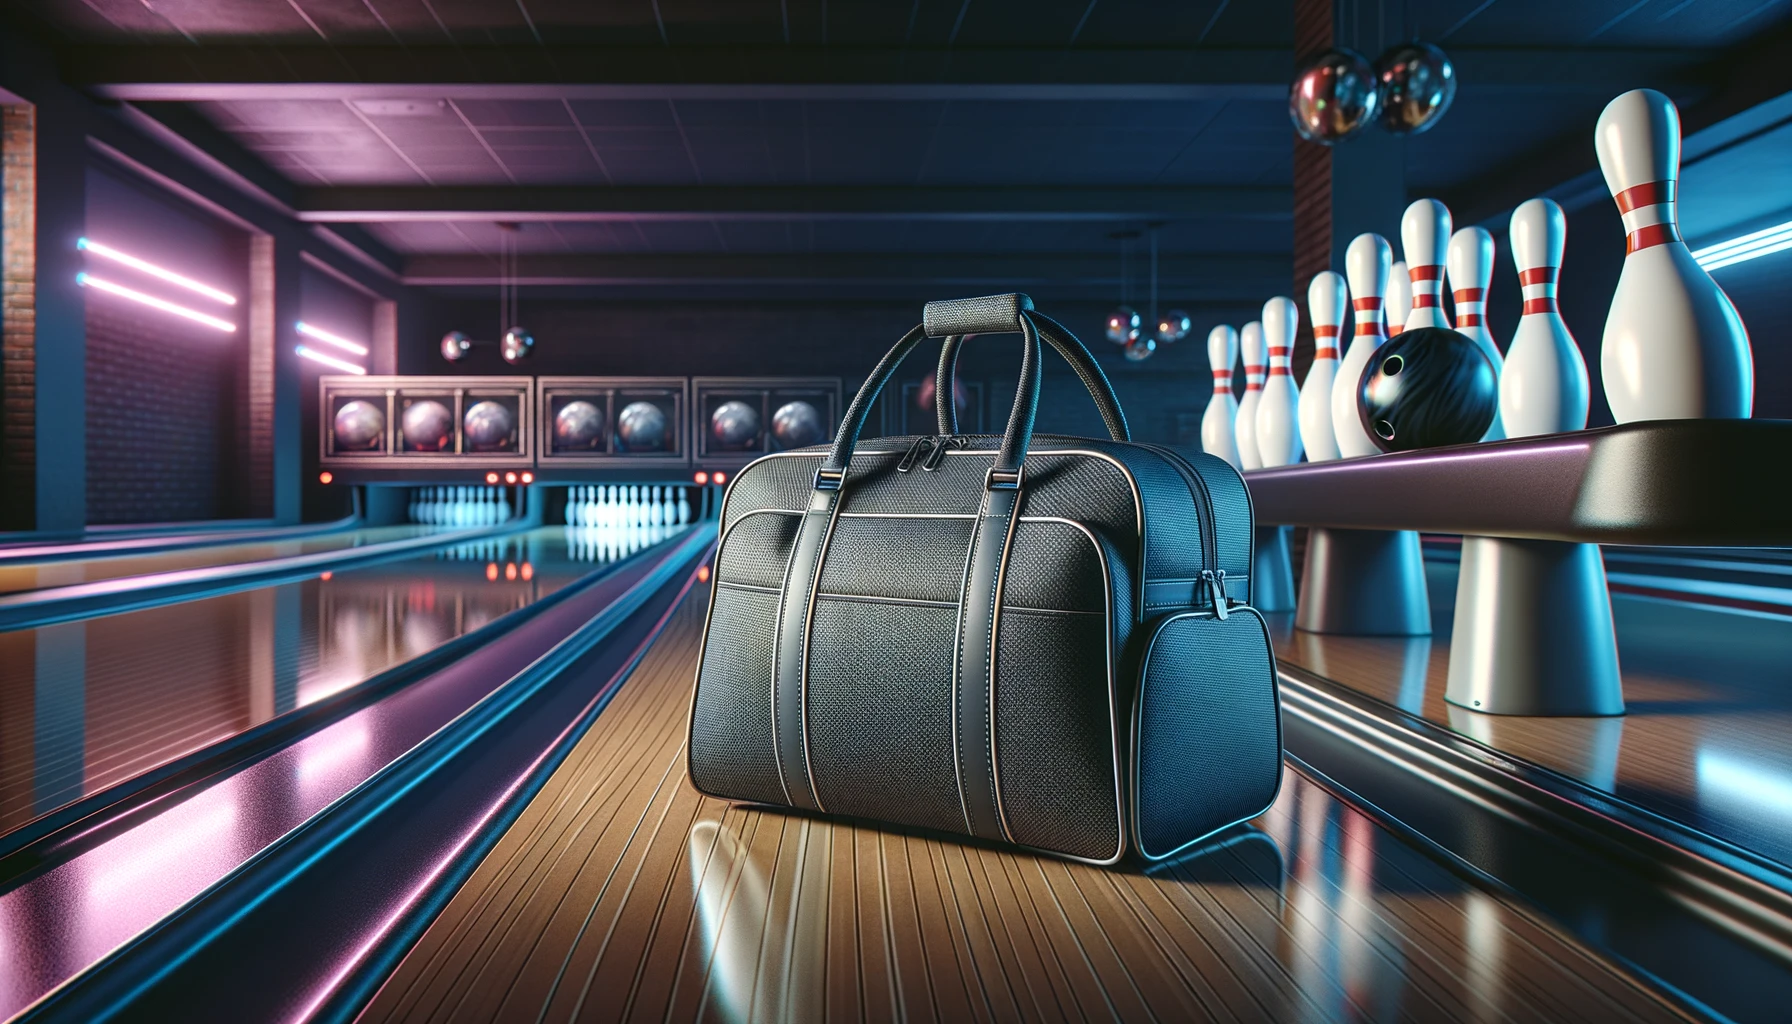 Foto einer eleganten, modernen Bowlingtasche, die auf einer glänzenden hölzernen Bowlingbahn steht, mit Bowlingpins im Hintergrund.